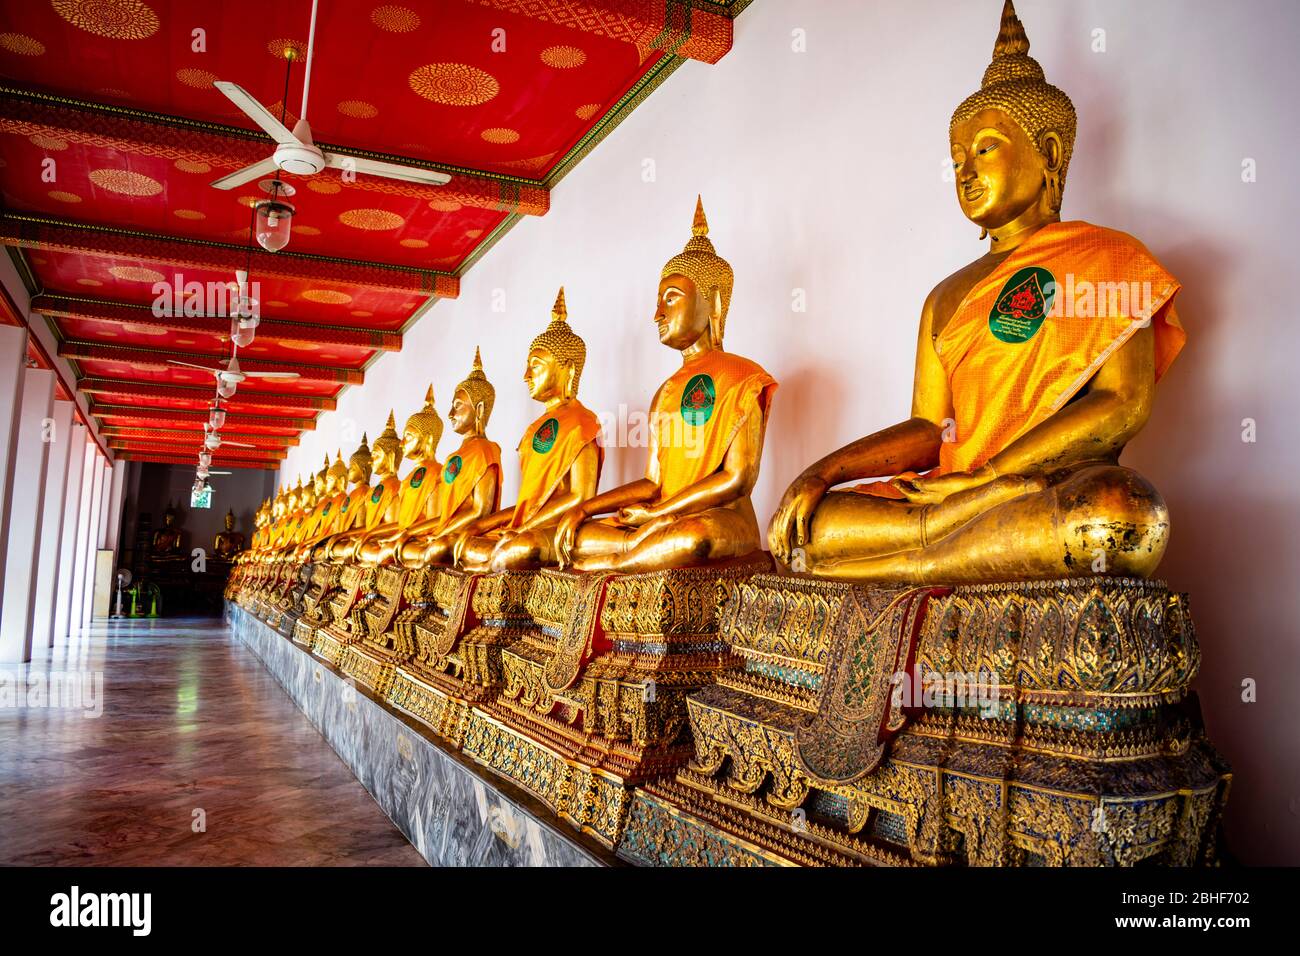 Thailandia, Bangkok - 12. januar 2019 - die sitzenden Buddhas des Wat Pho in Bangkok Stockfoto